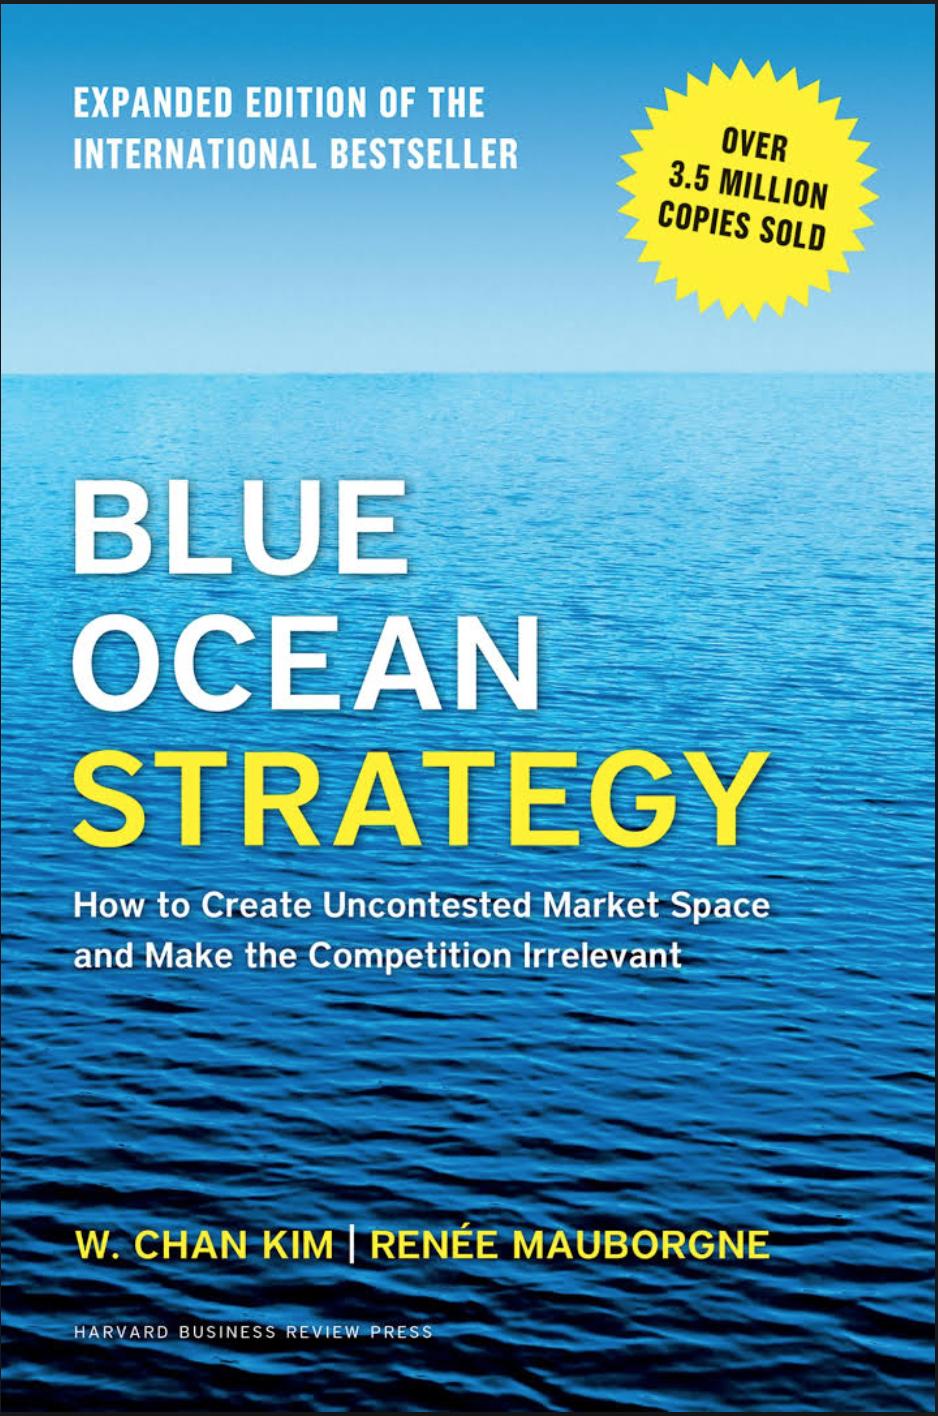 DNHS bookabook Blue Ocean